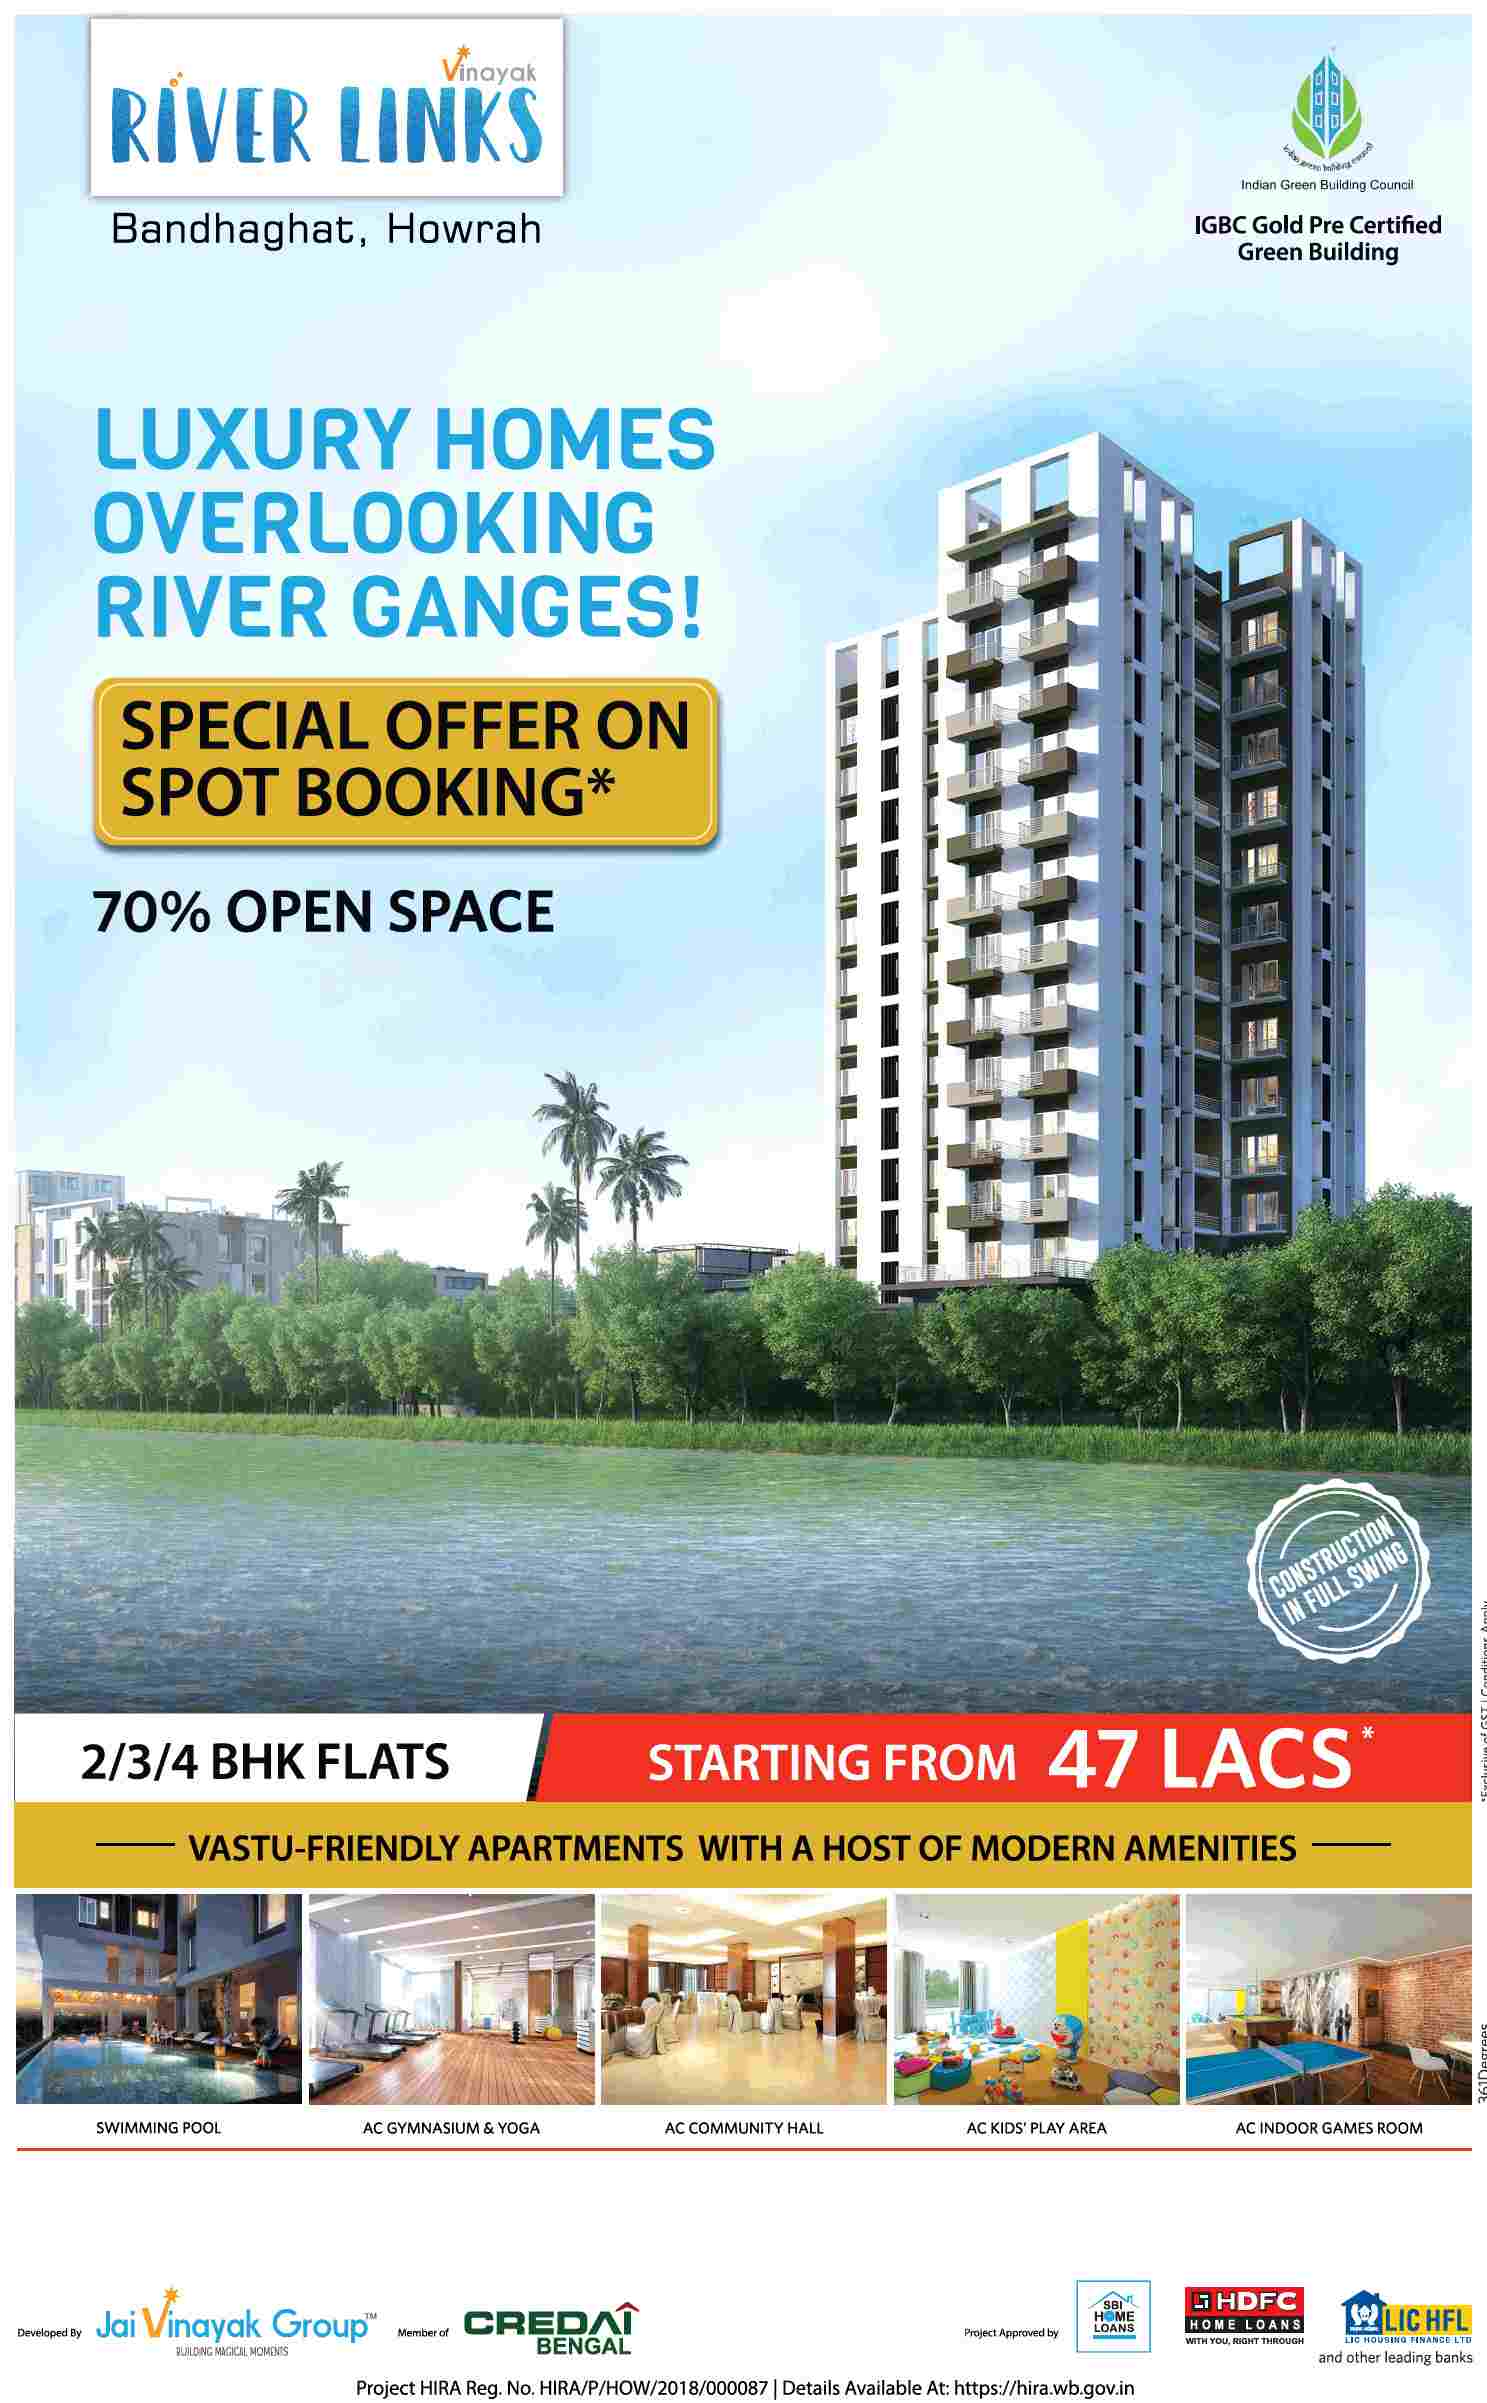 Book vastu friendly apartments @ Rs 47 Lacs at Jai Vinayak River Links in Kolkata Update